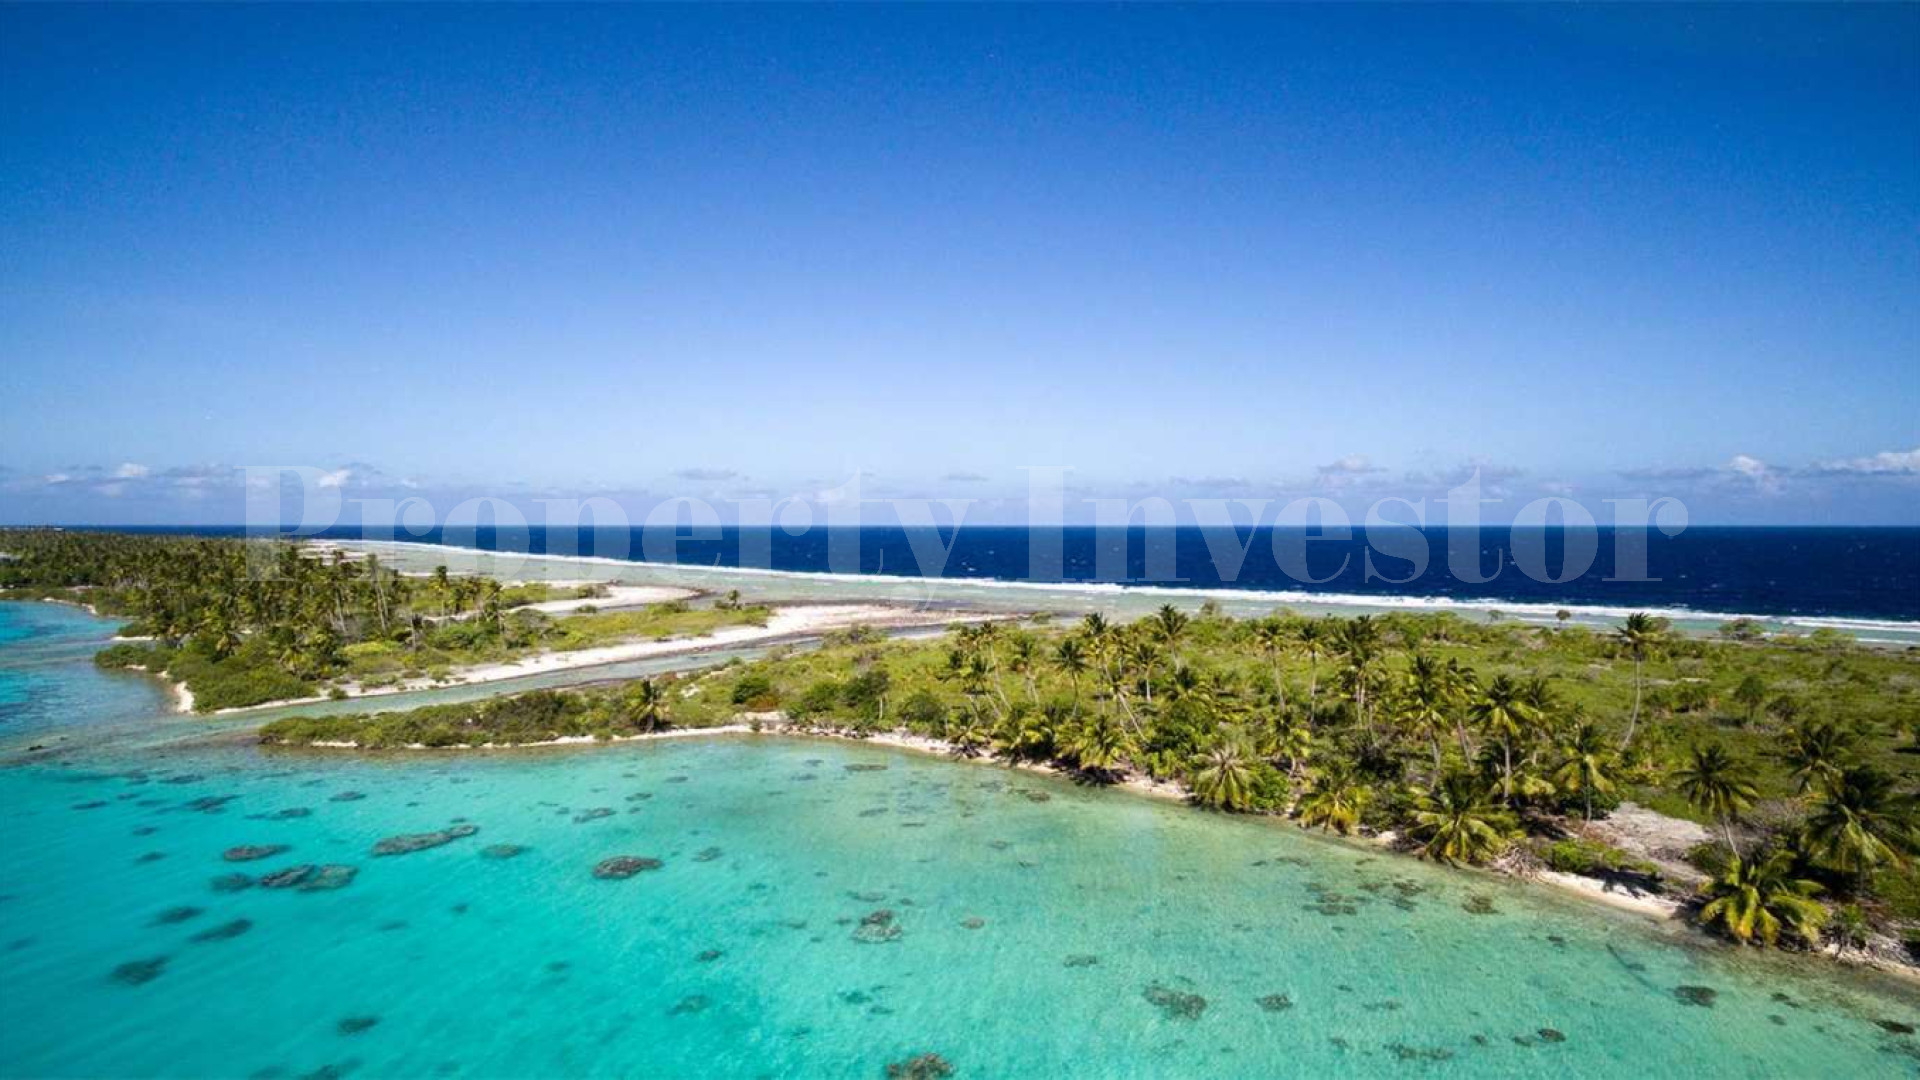 Продается нетронутый частный дикий остров 9,7 га во Французской Полинезии